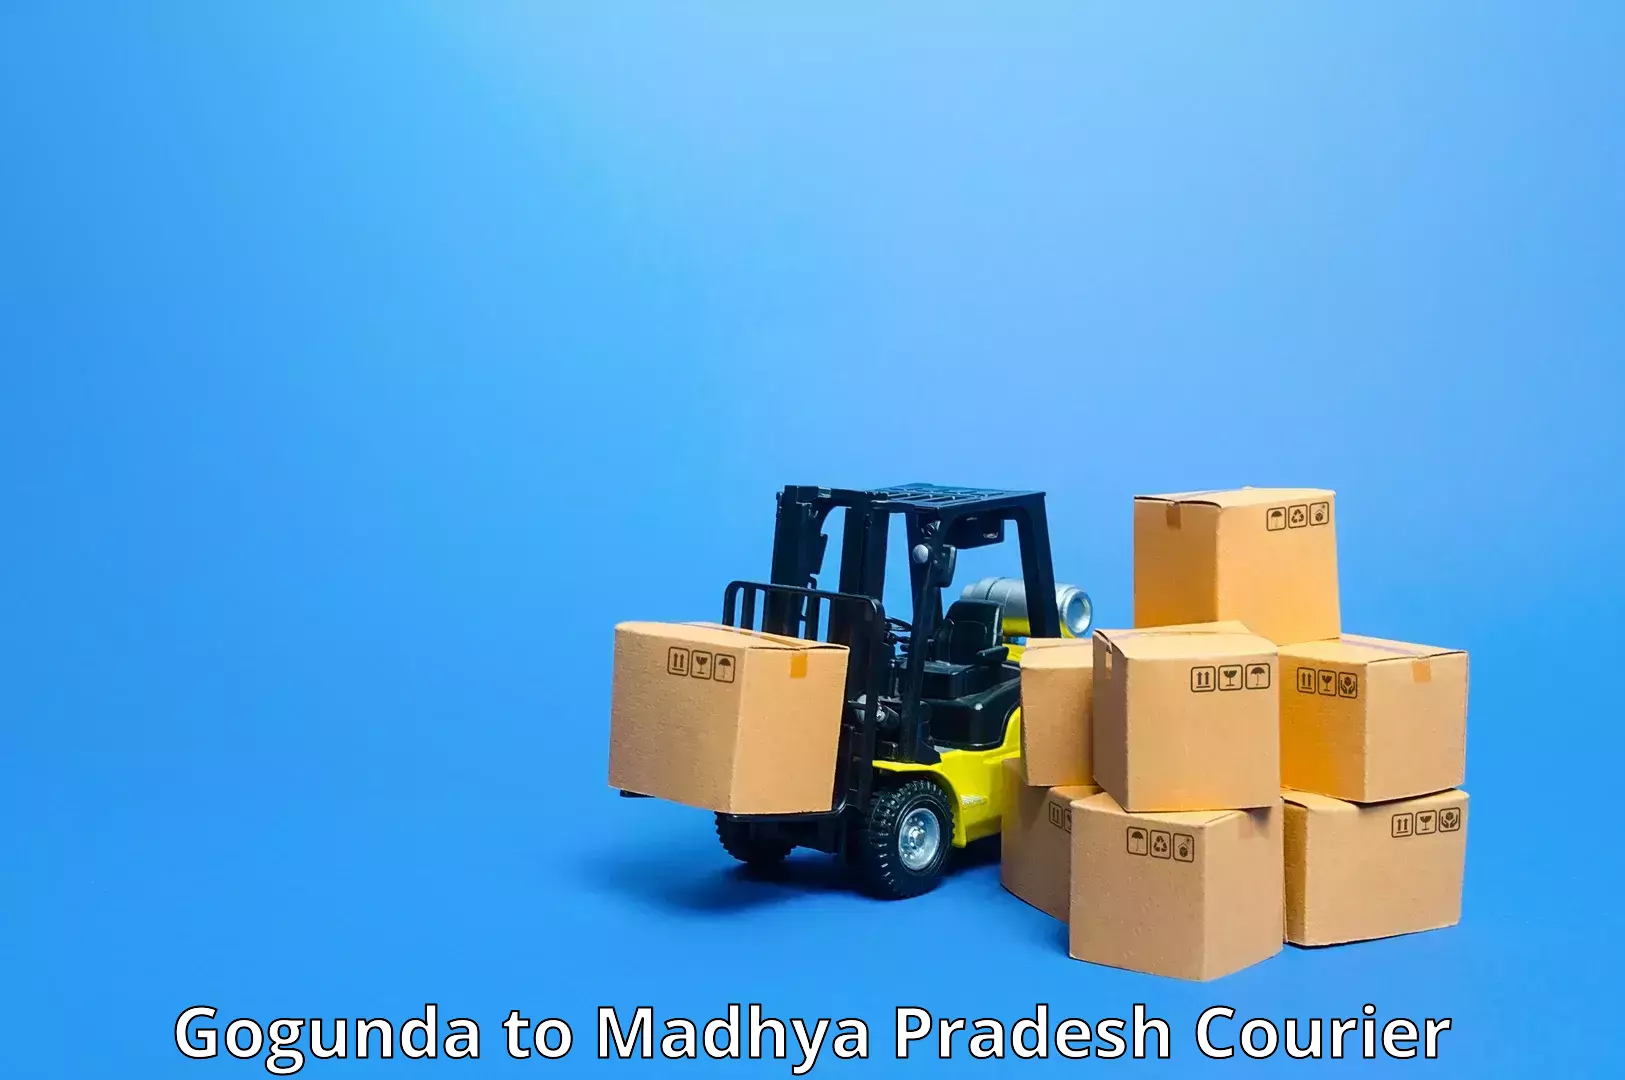 Courier service booking Gogunda to Madhya Pradesh